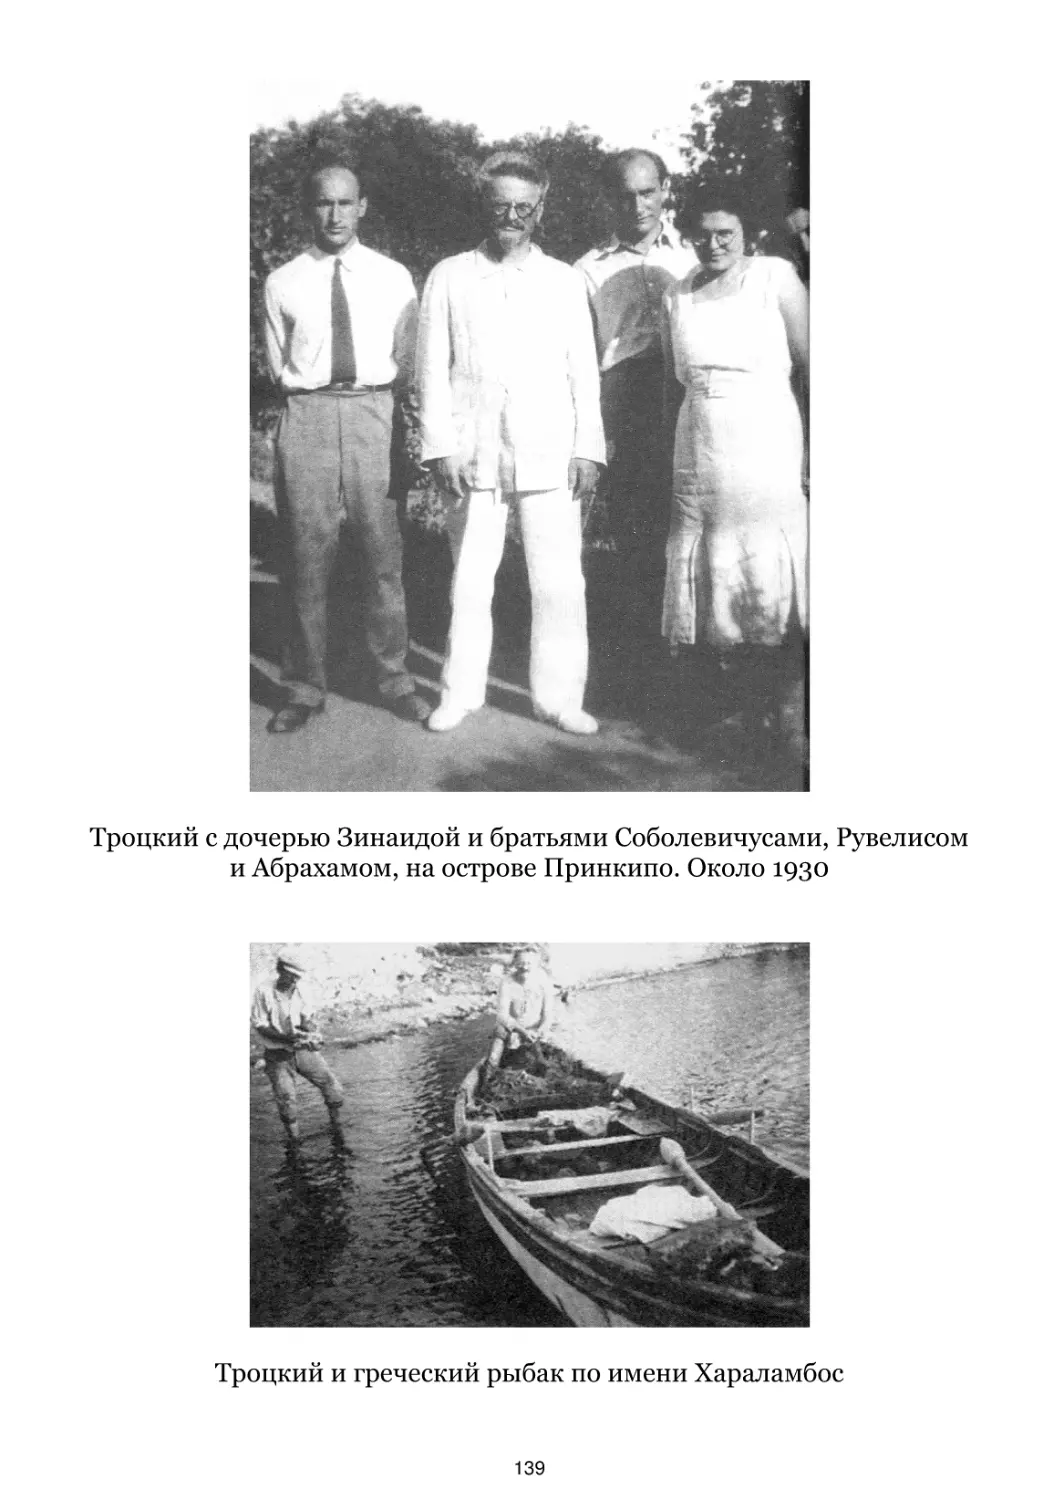 Троцкий с дочерью Зинаидой и братьями Соболевичусами. Около 1930
Троцкий и греческий рыбак по имени Хараламбос